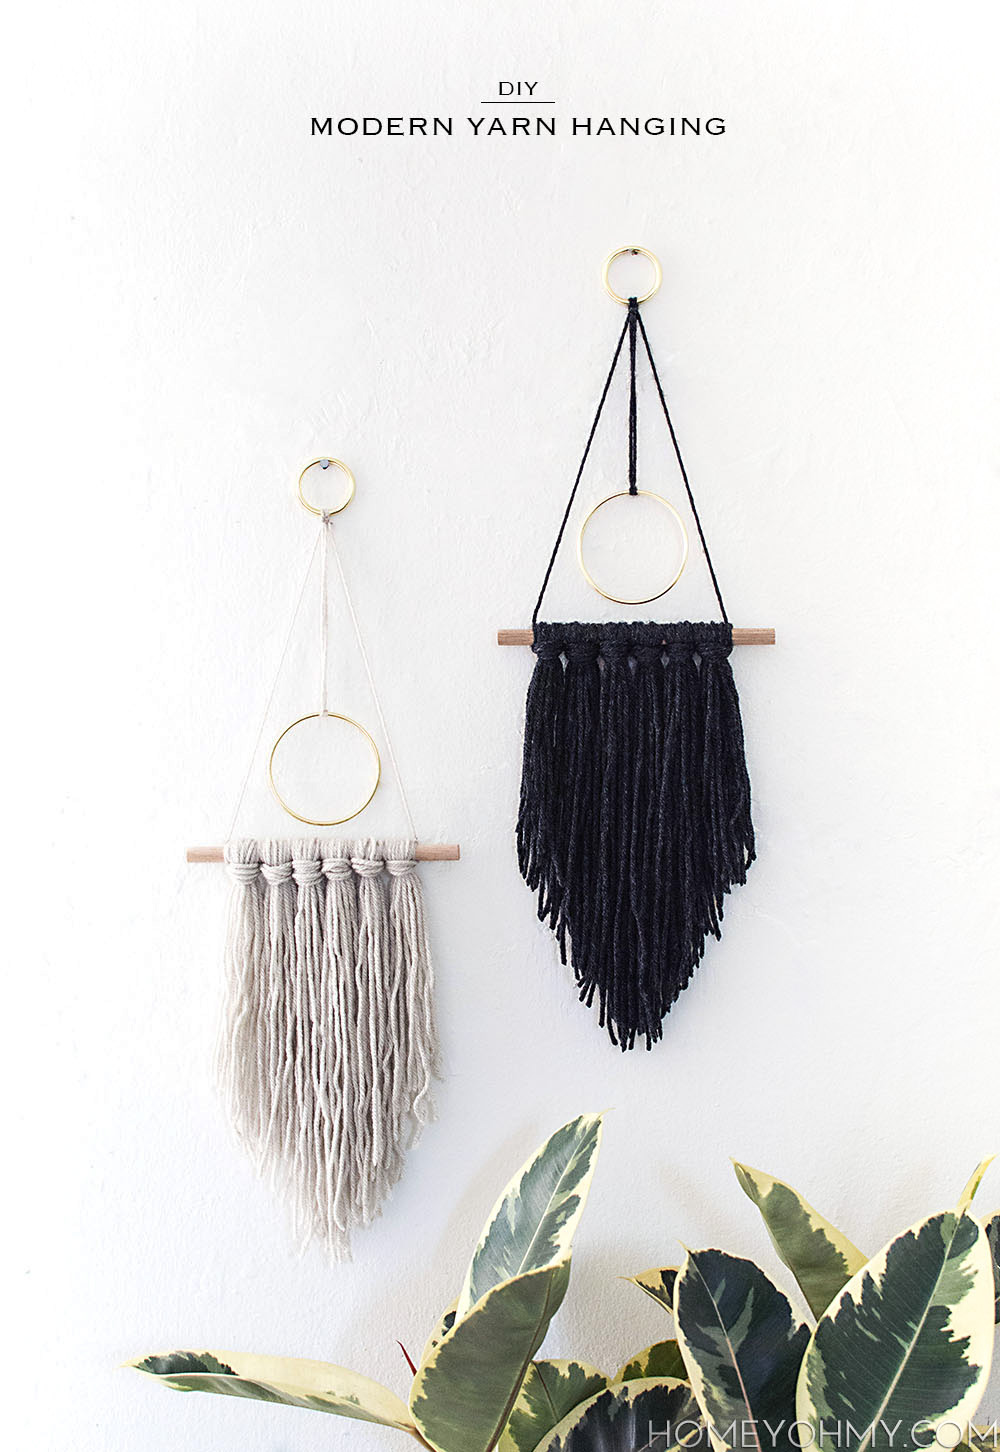 DIY Modern Yarn Hanging - Homey Oh My